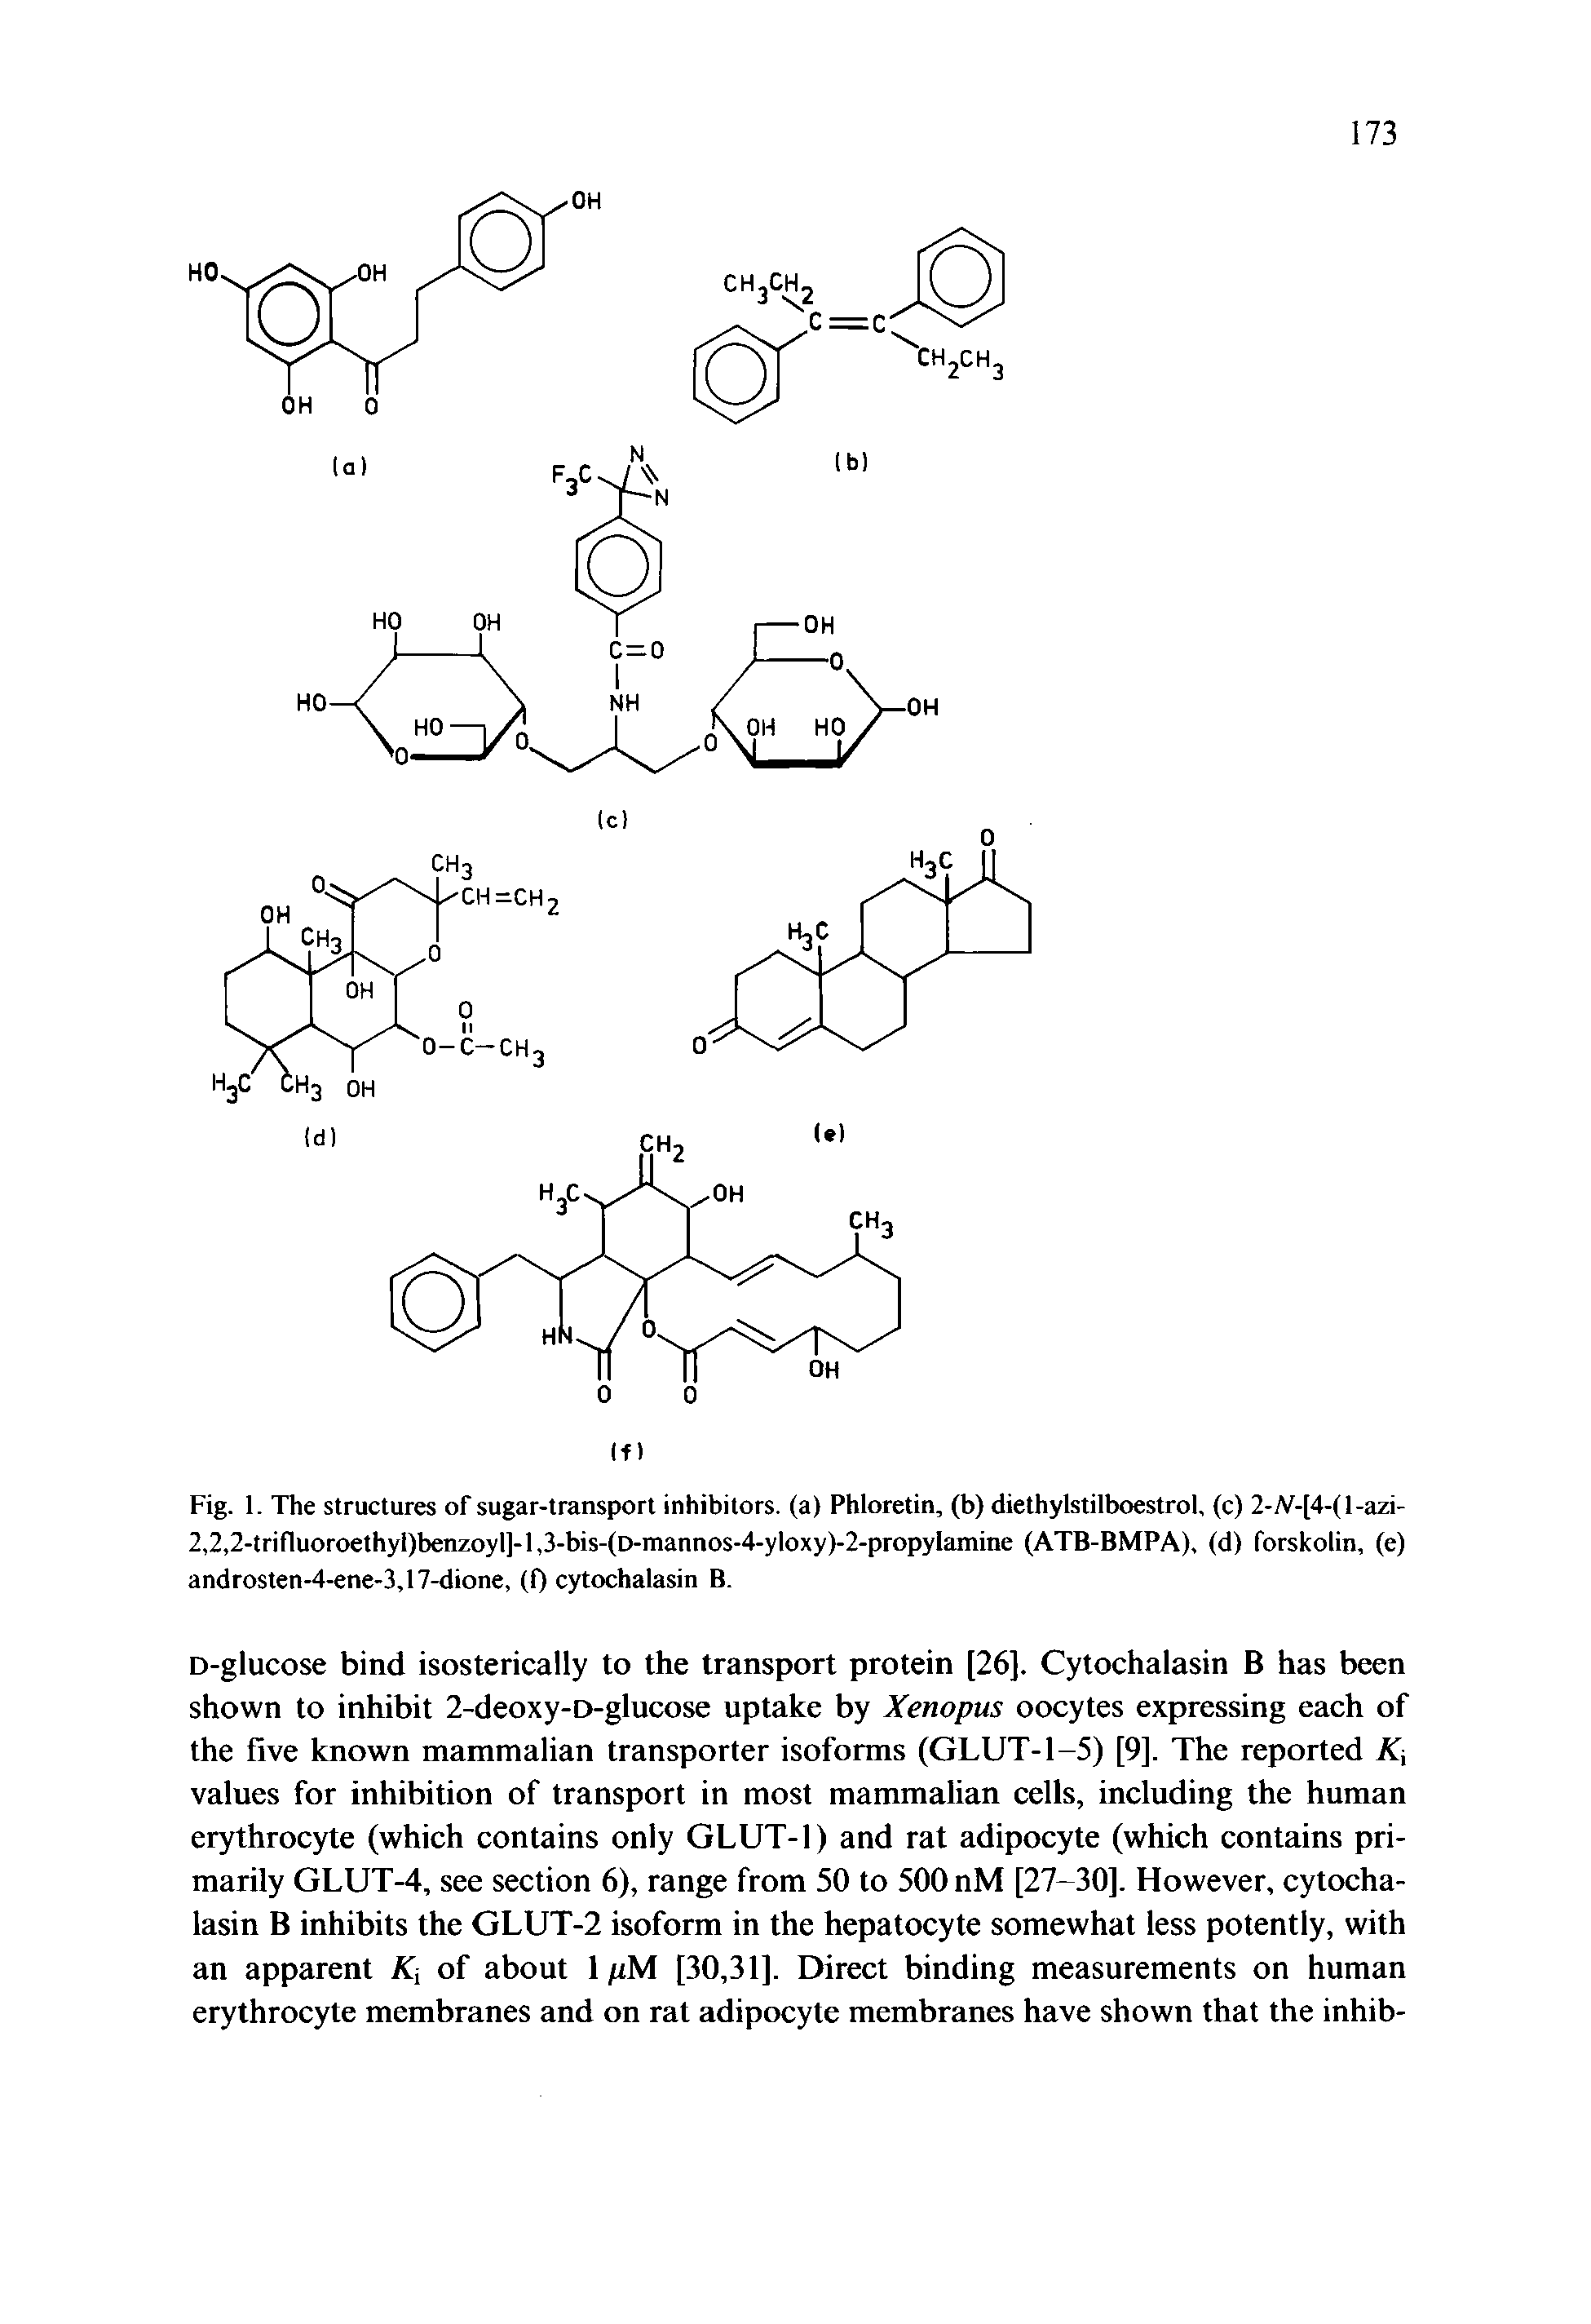 Fig. 1. The structures of sugar-transport inhibitors, (a) Phloretin, (b) diethylstilboestrol, (c) 2-A -[4-(l-azi-2,2,2-trifluoroethyl)benzoyl]-l,3-bis-(D-mannos-4-yloxy)-2-propylamine (ATB-BMPA), (d) forskolin, (e) androsten-4-ene-3,17-dione, (0 cytochalasin B.